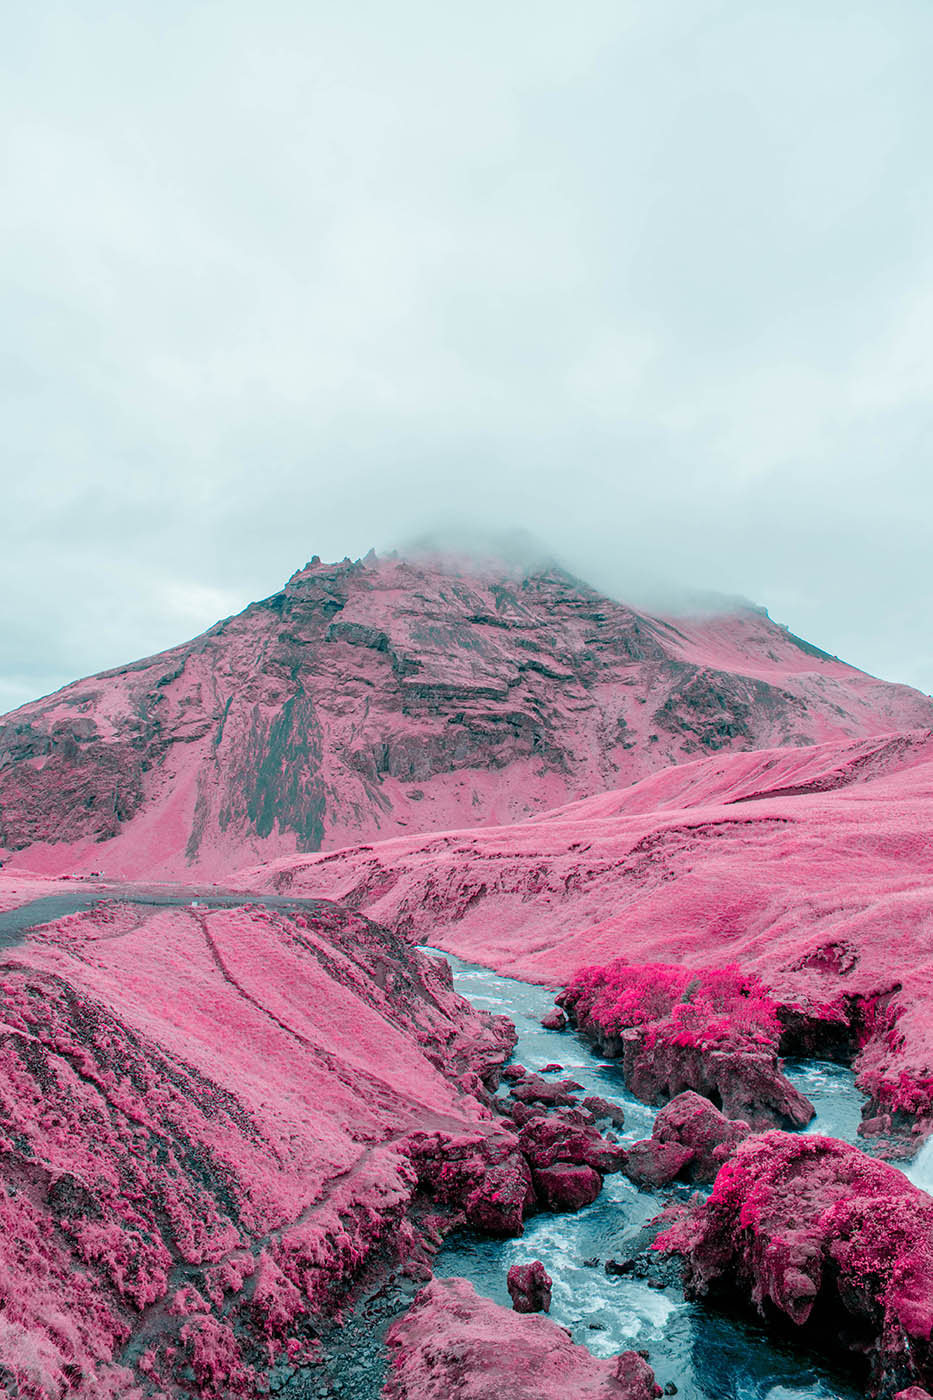 Dreamscape of Iceland © Al Mefer